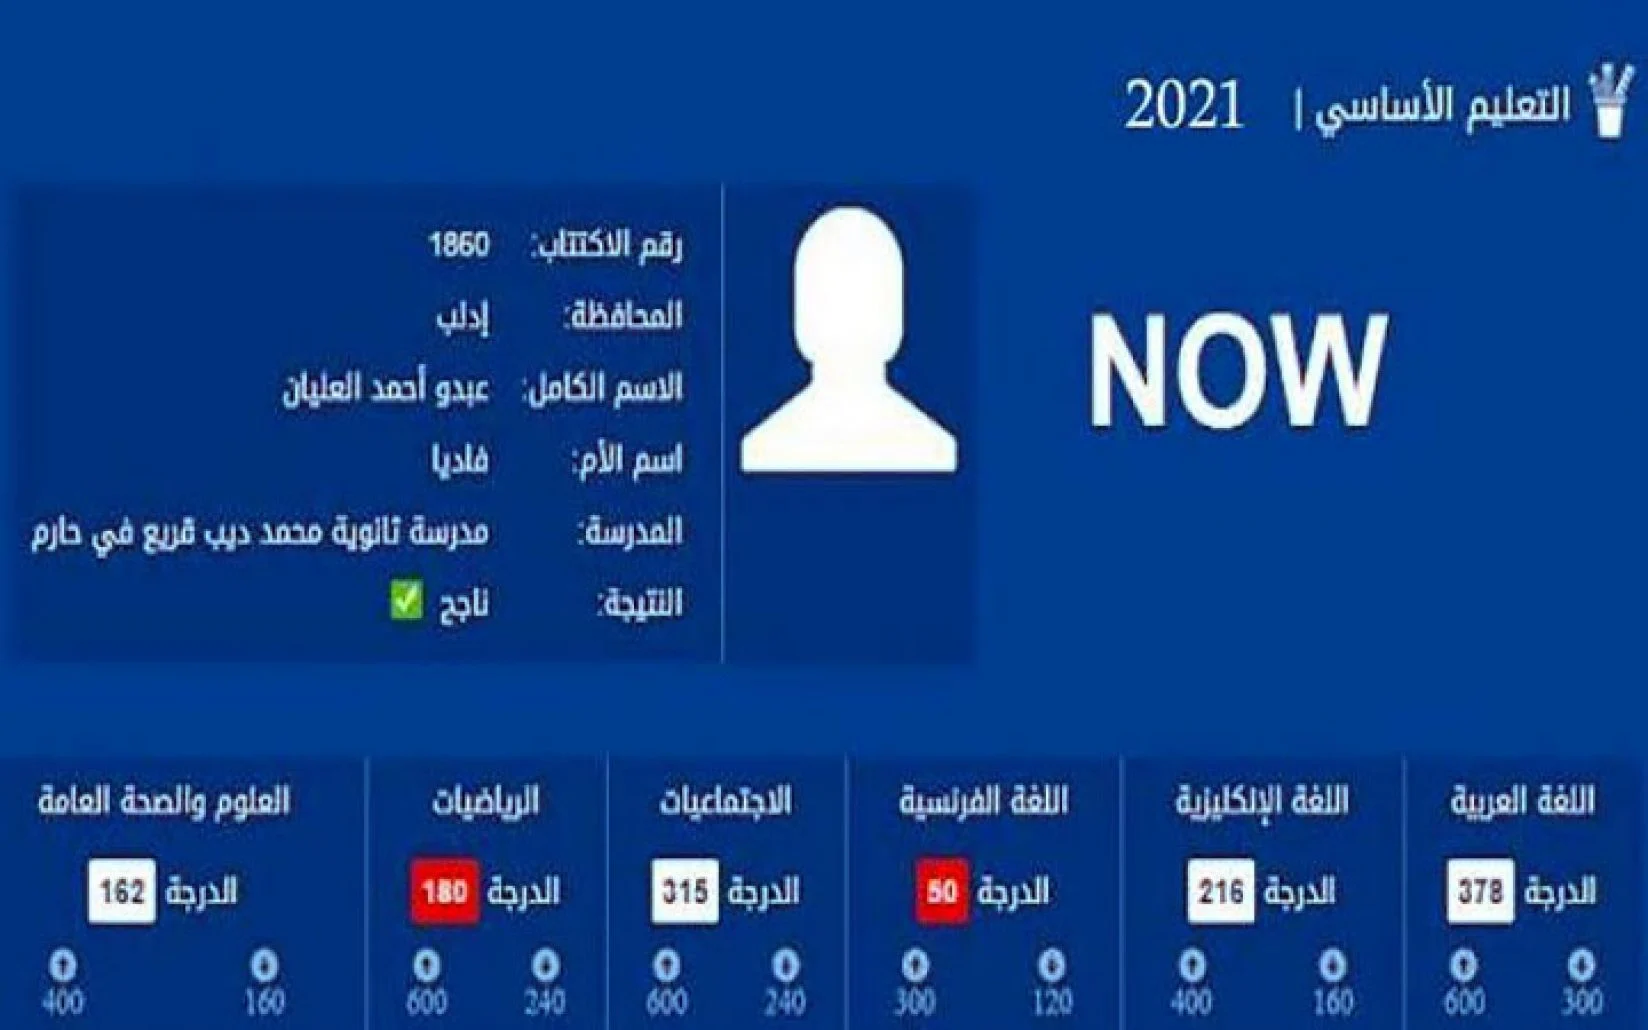 الان الاستعلام عن نتائج البكالوريا 2022 سوريا من موقع وزارة التربية السورية برقم الاكتتاب كل المحافظات السورية